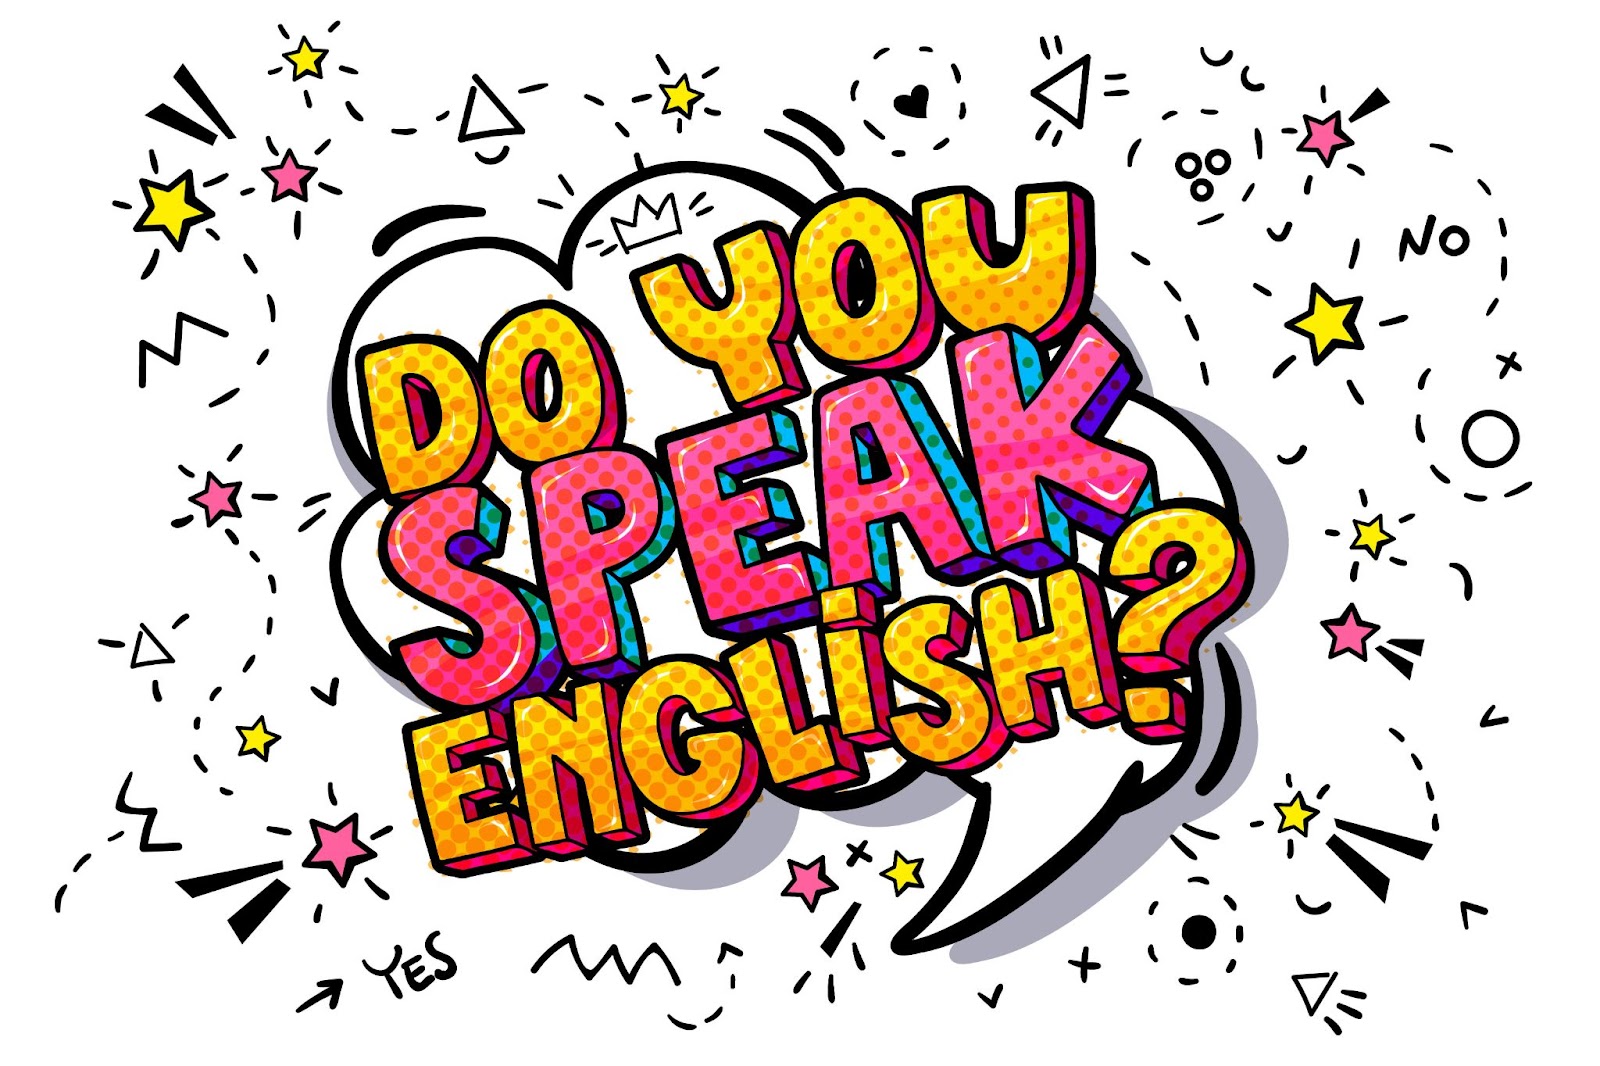 לימוד אנגלית לילדים- ביטויים נפוצים באנגלית ותרגומם לעברית